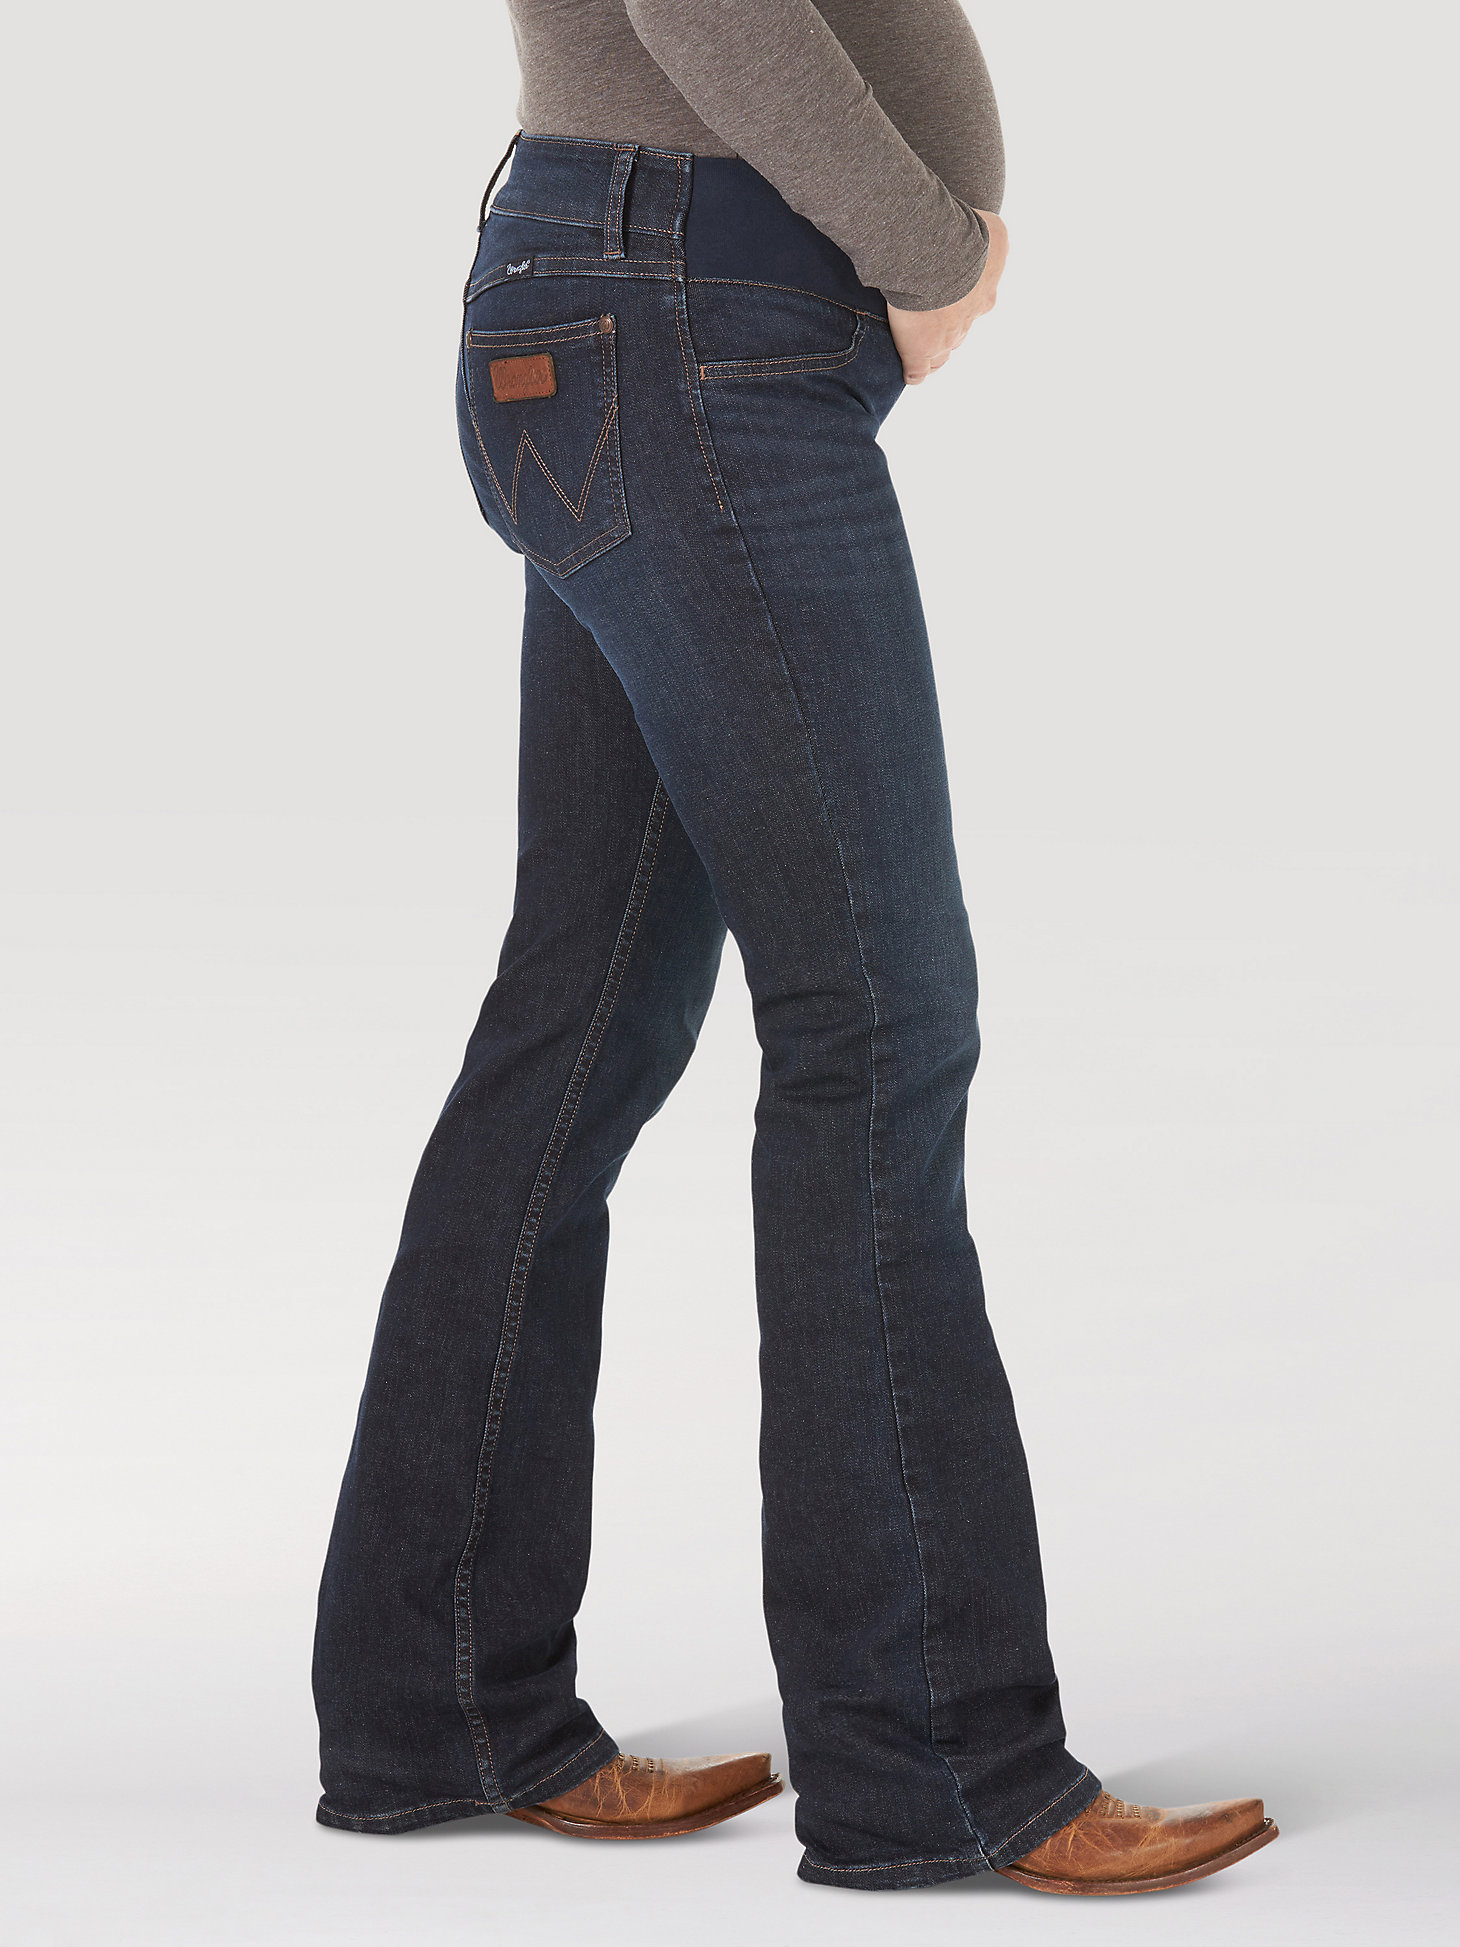 Women's Wrangler Retro® Mae Maternity Jean in M Wash alternative view 1